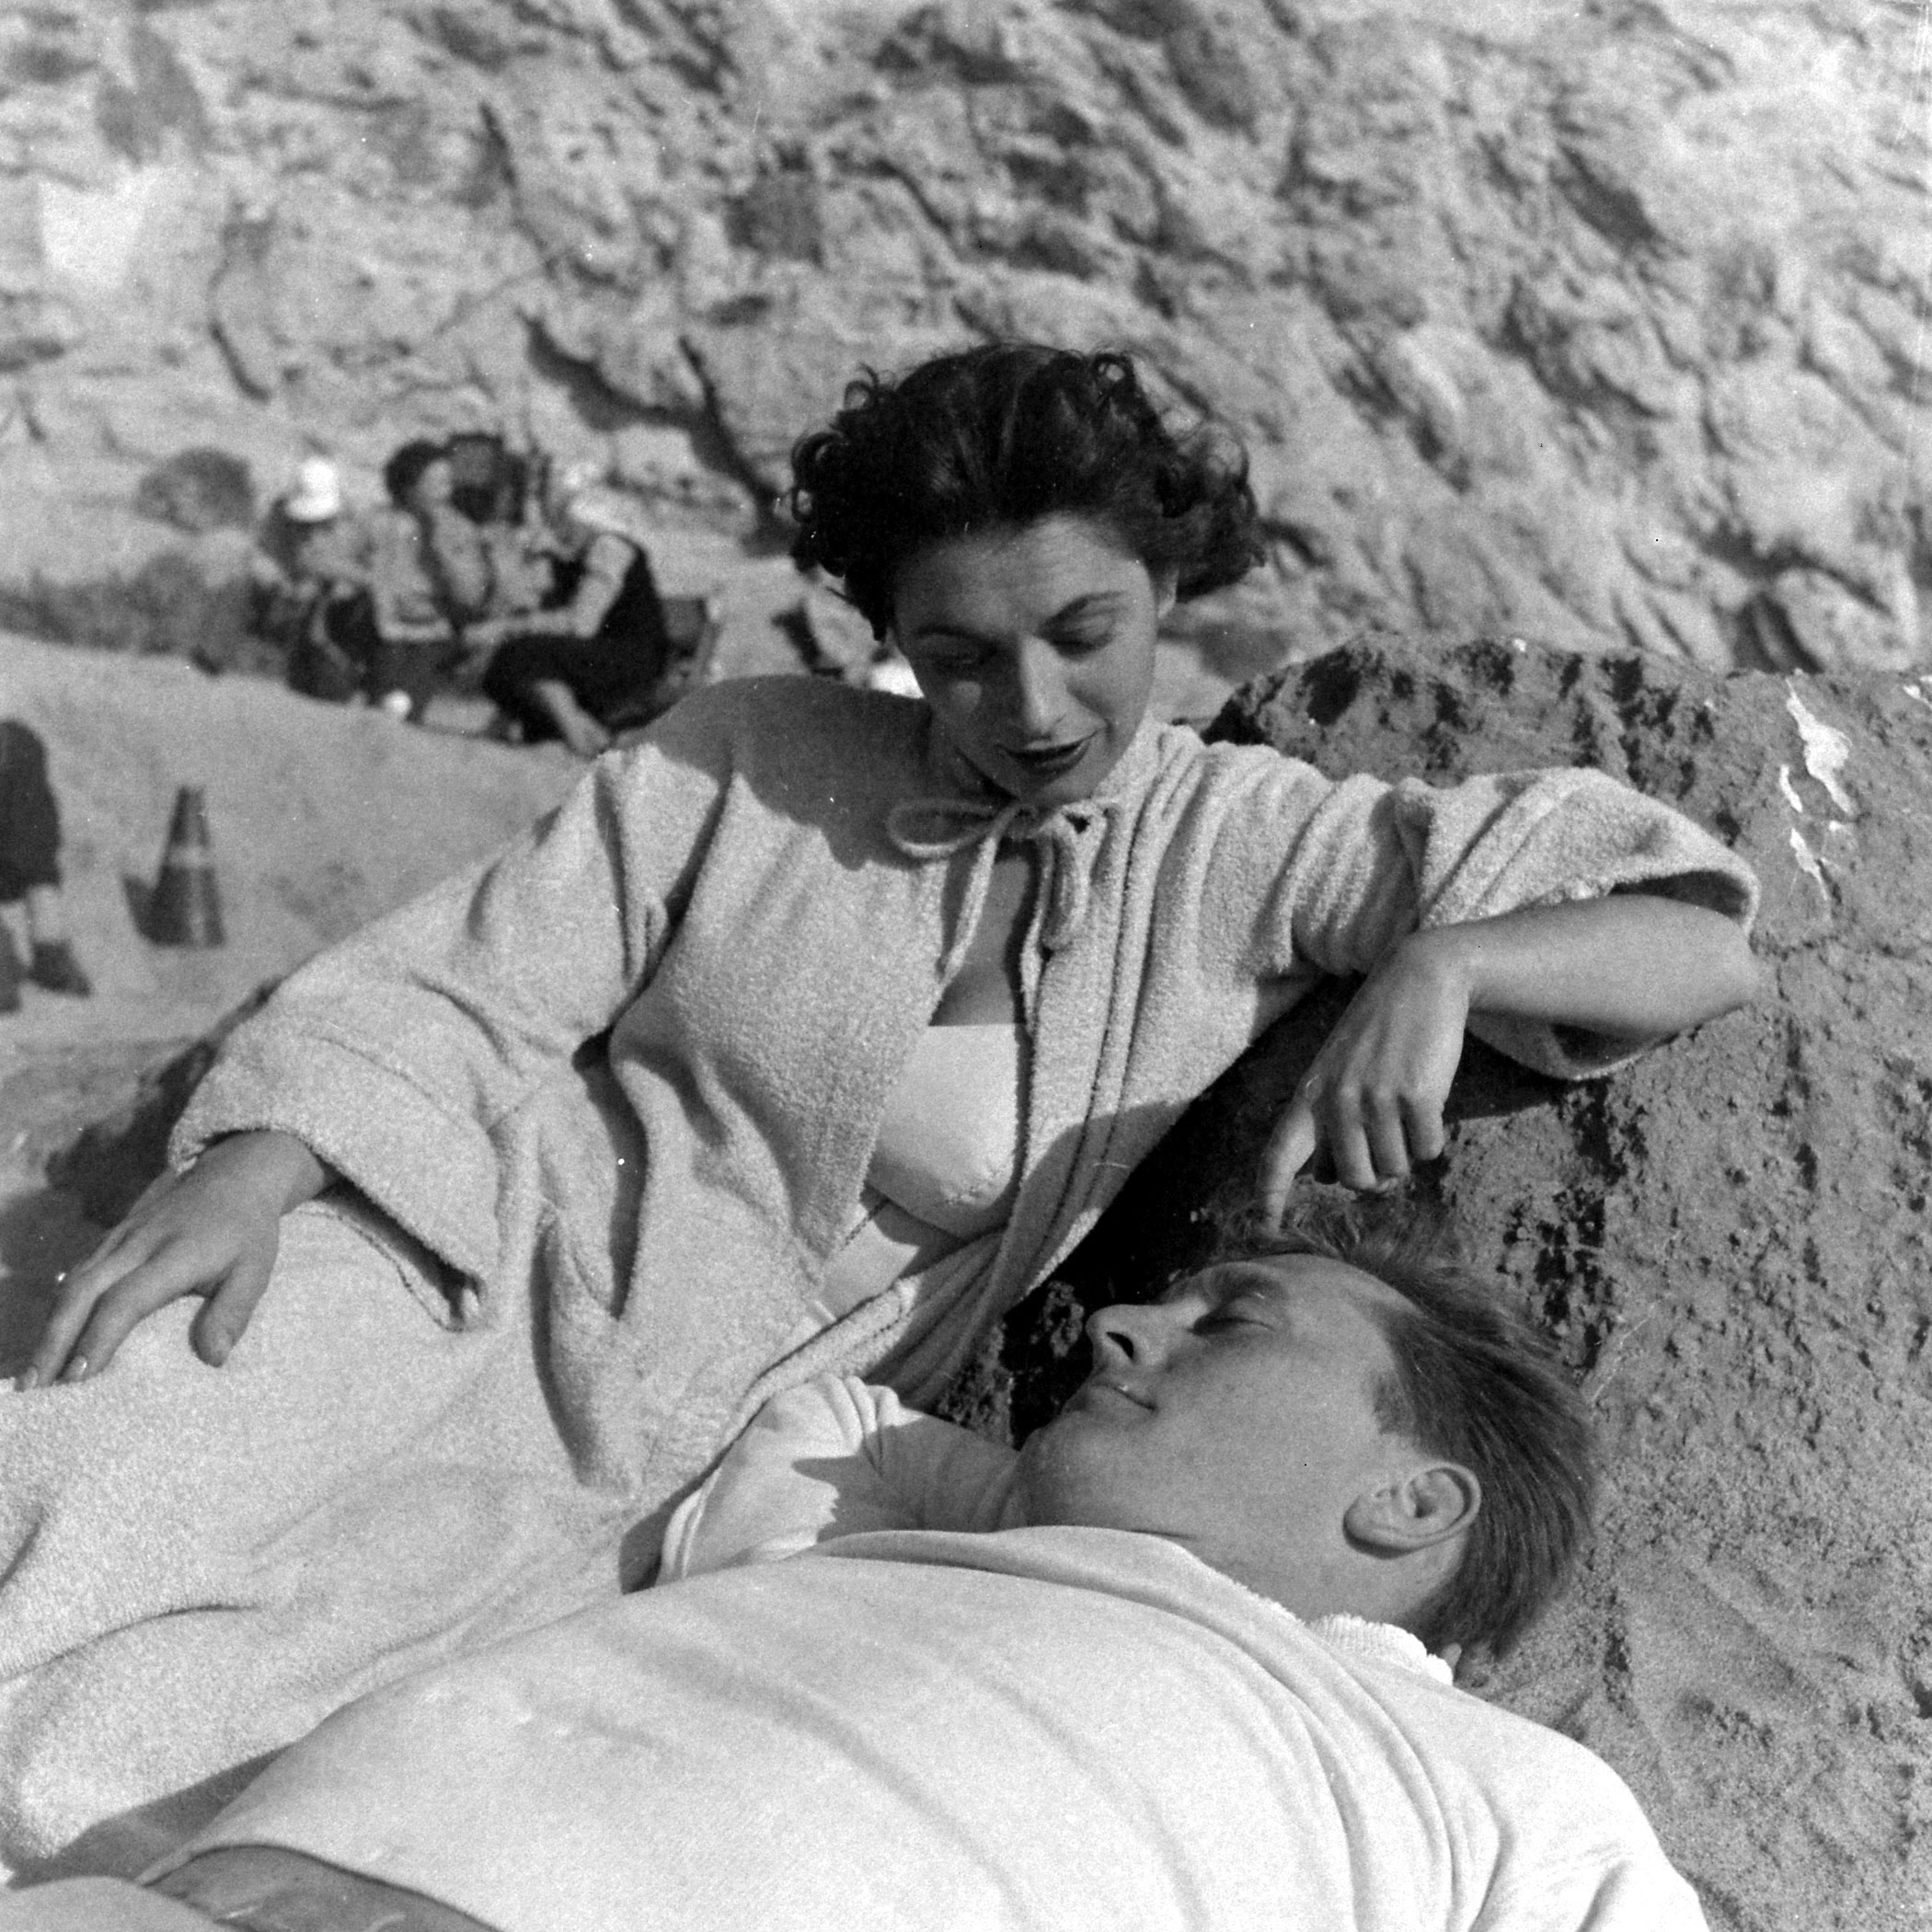 Kirk Douglas and actress Ruth Roman, 1949.